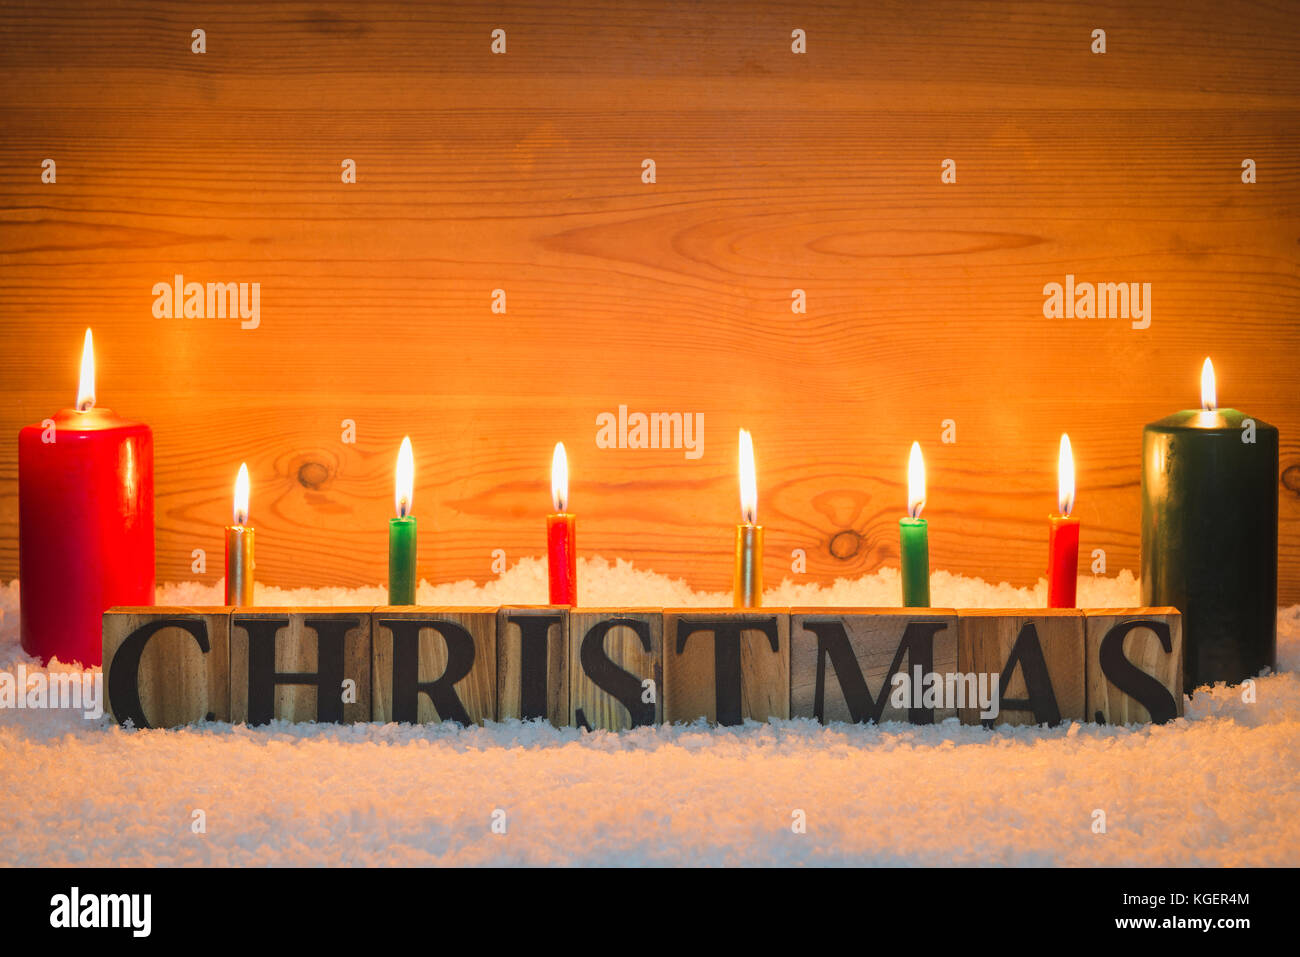 Das Wort Weihnachten aus Holz Buchstaben in künstlichen Schnee mit Kerzen brennen und eine hölzerne Hintergrund. Stockfoto